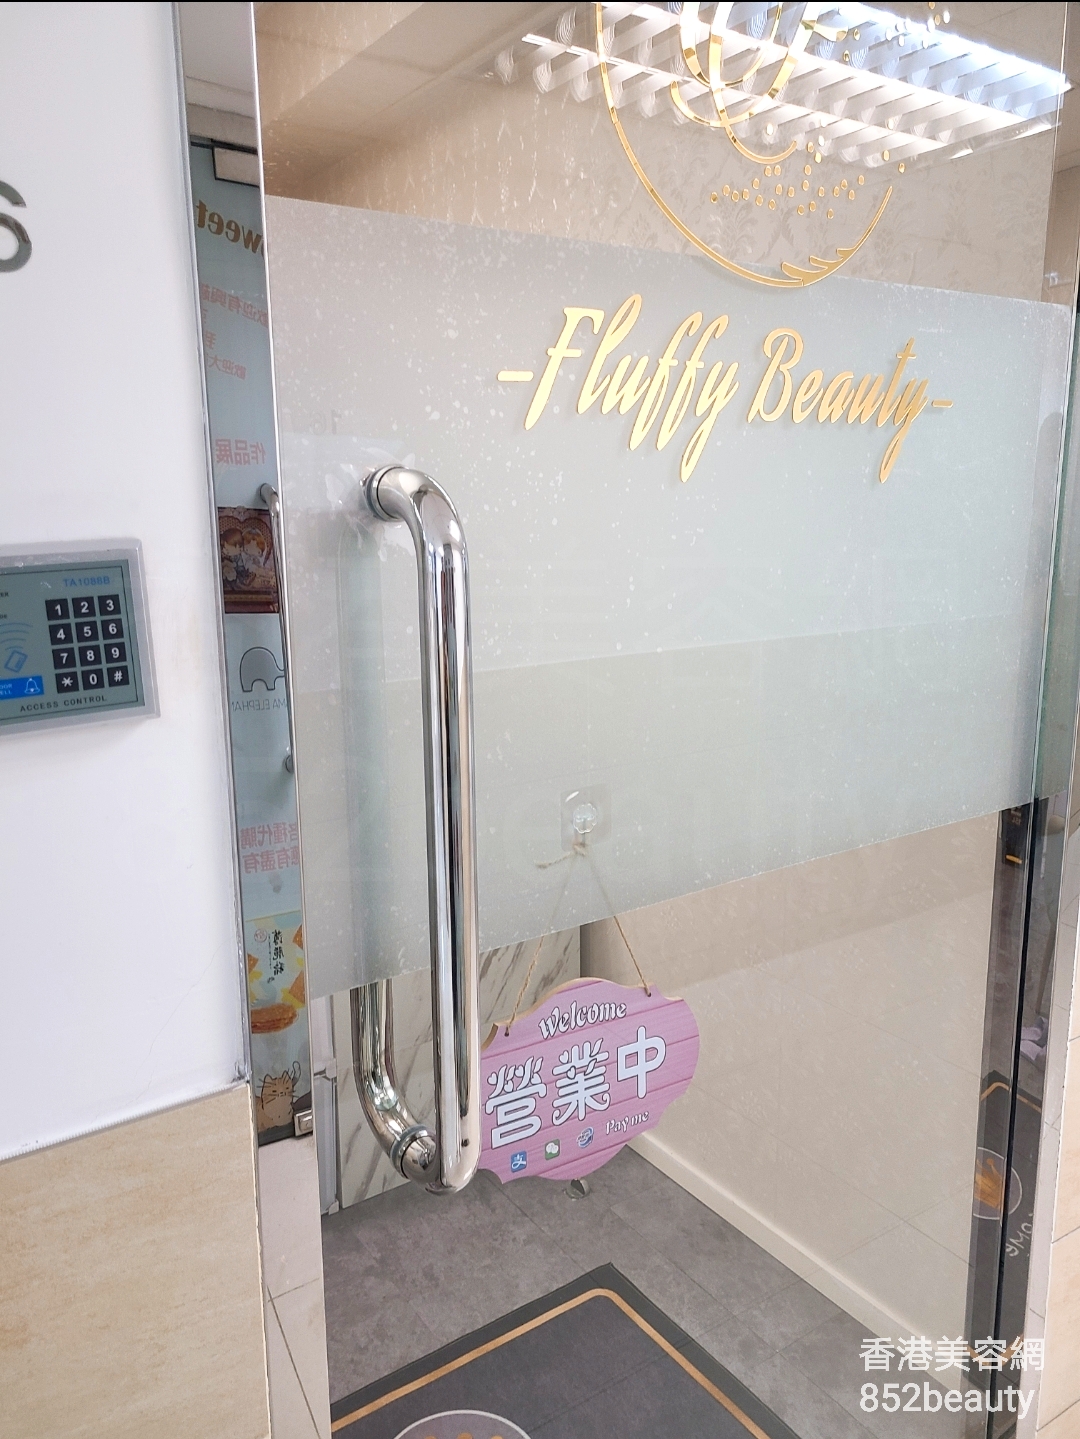 美容院 Beauty Salon: Fluffy Beauty